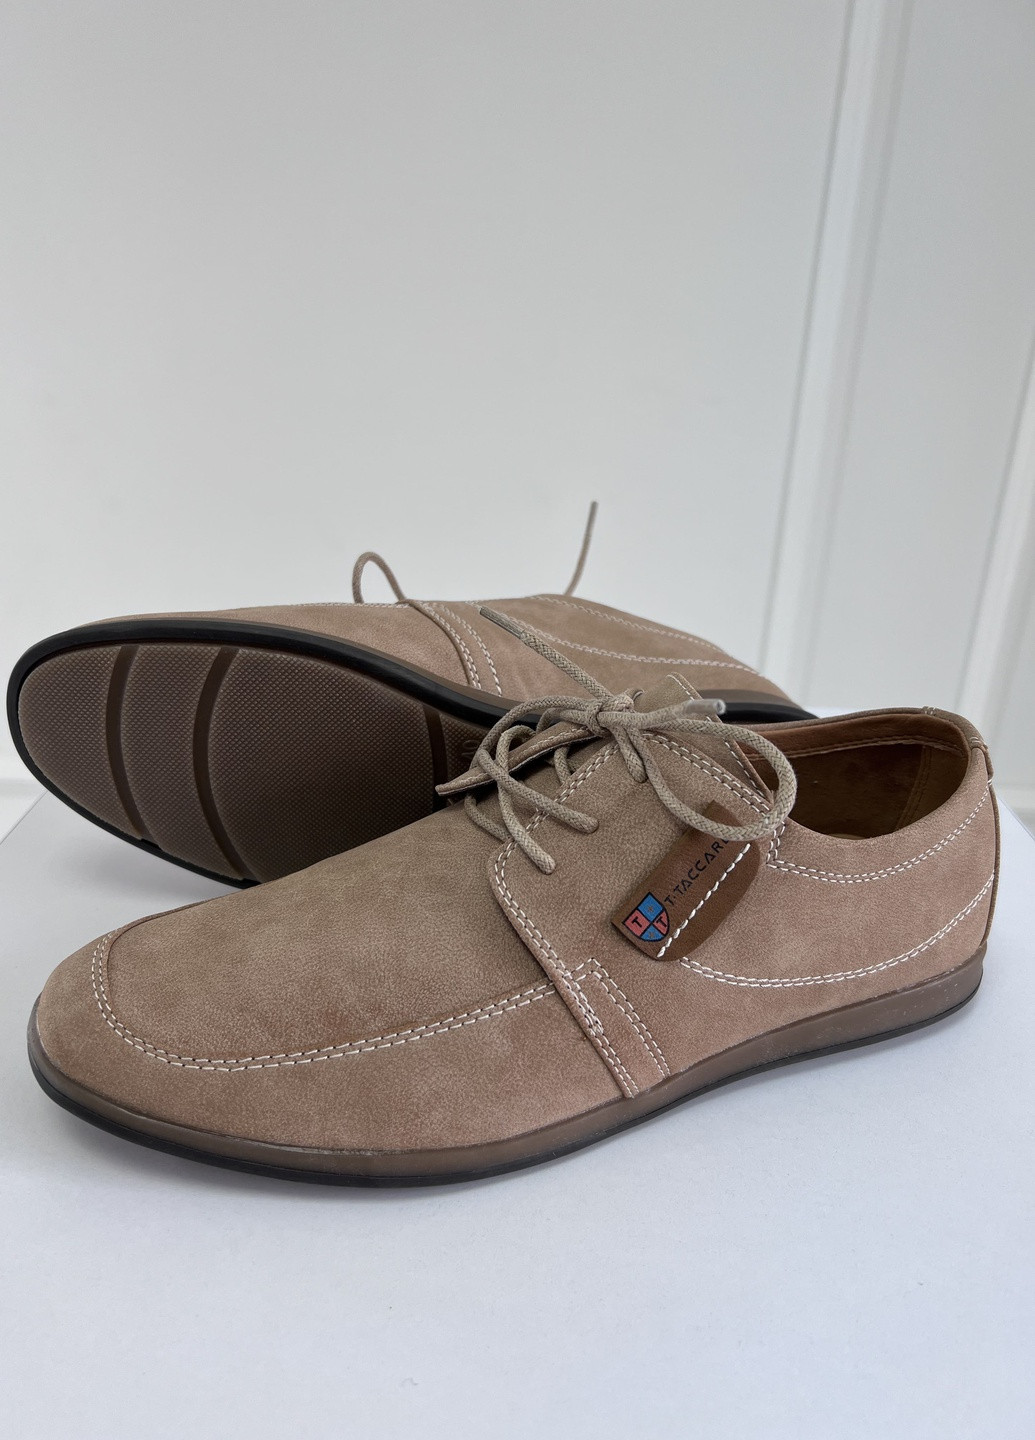 Бежевые классические туфли мужские бежевые Let's Shop на шнурках